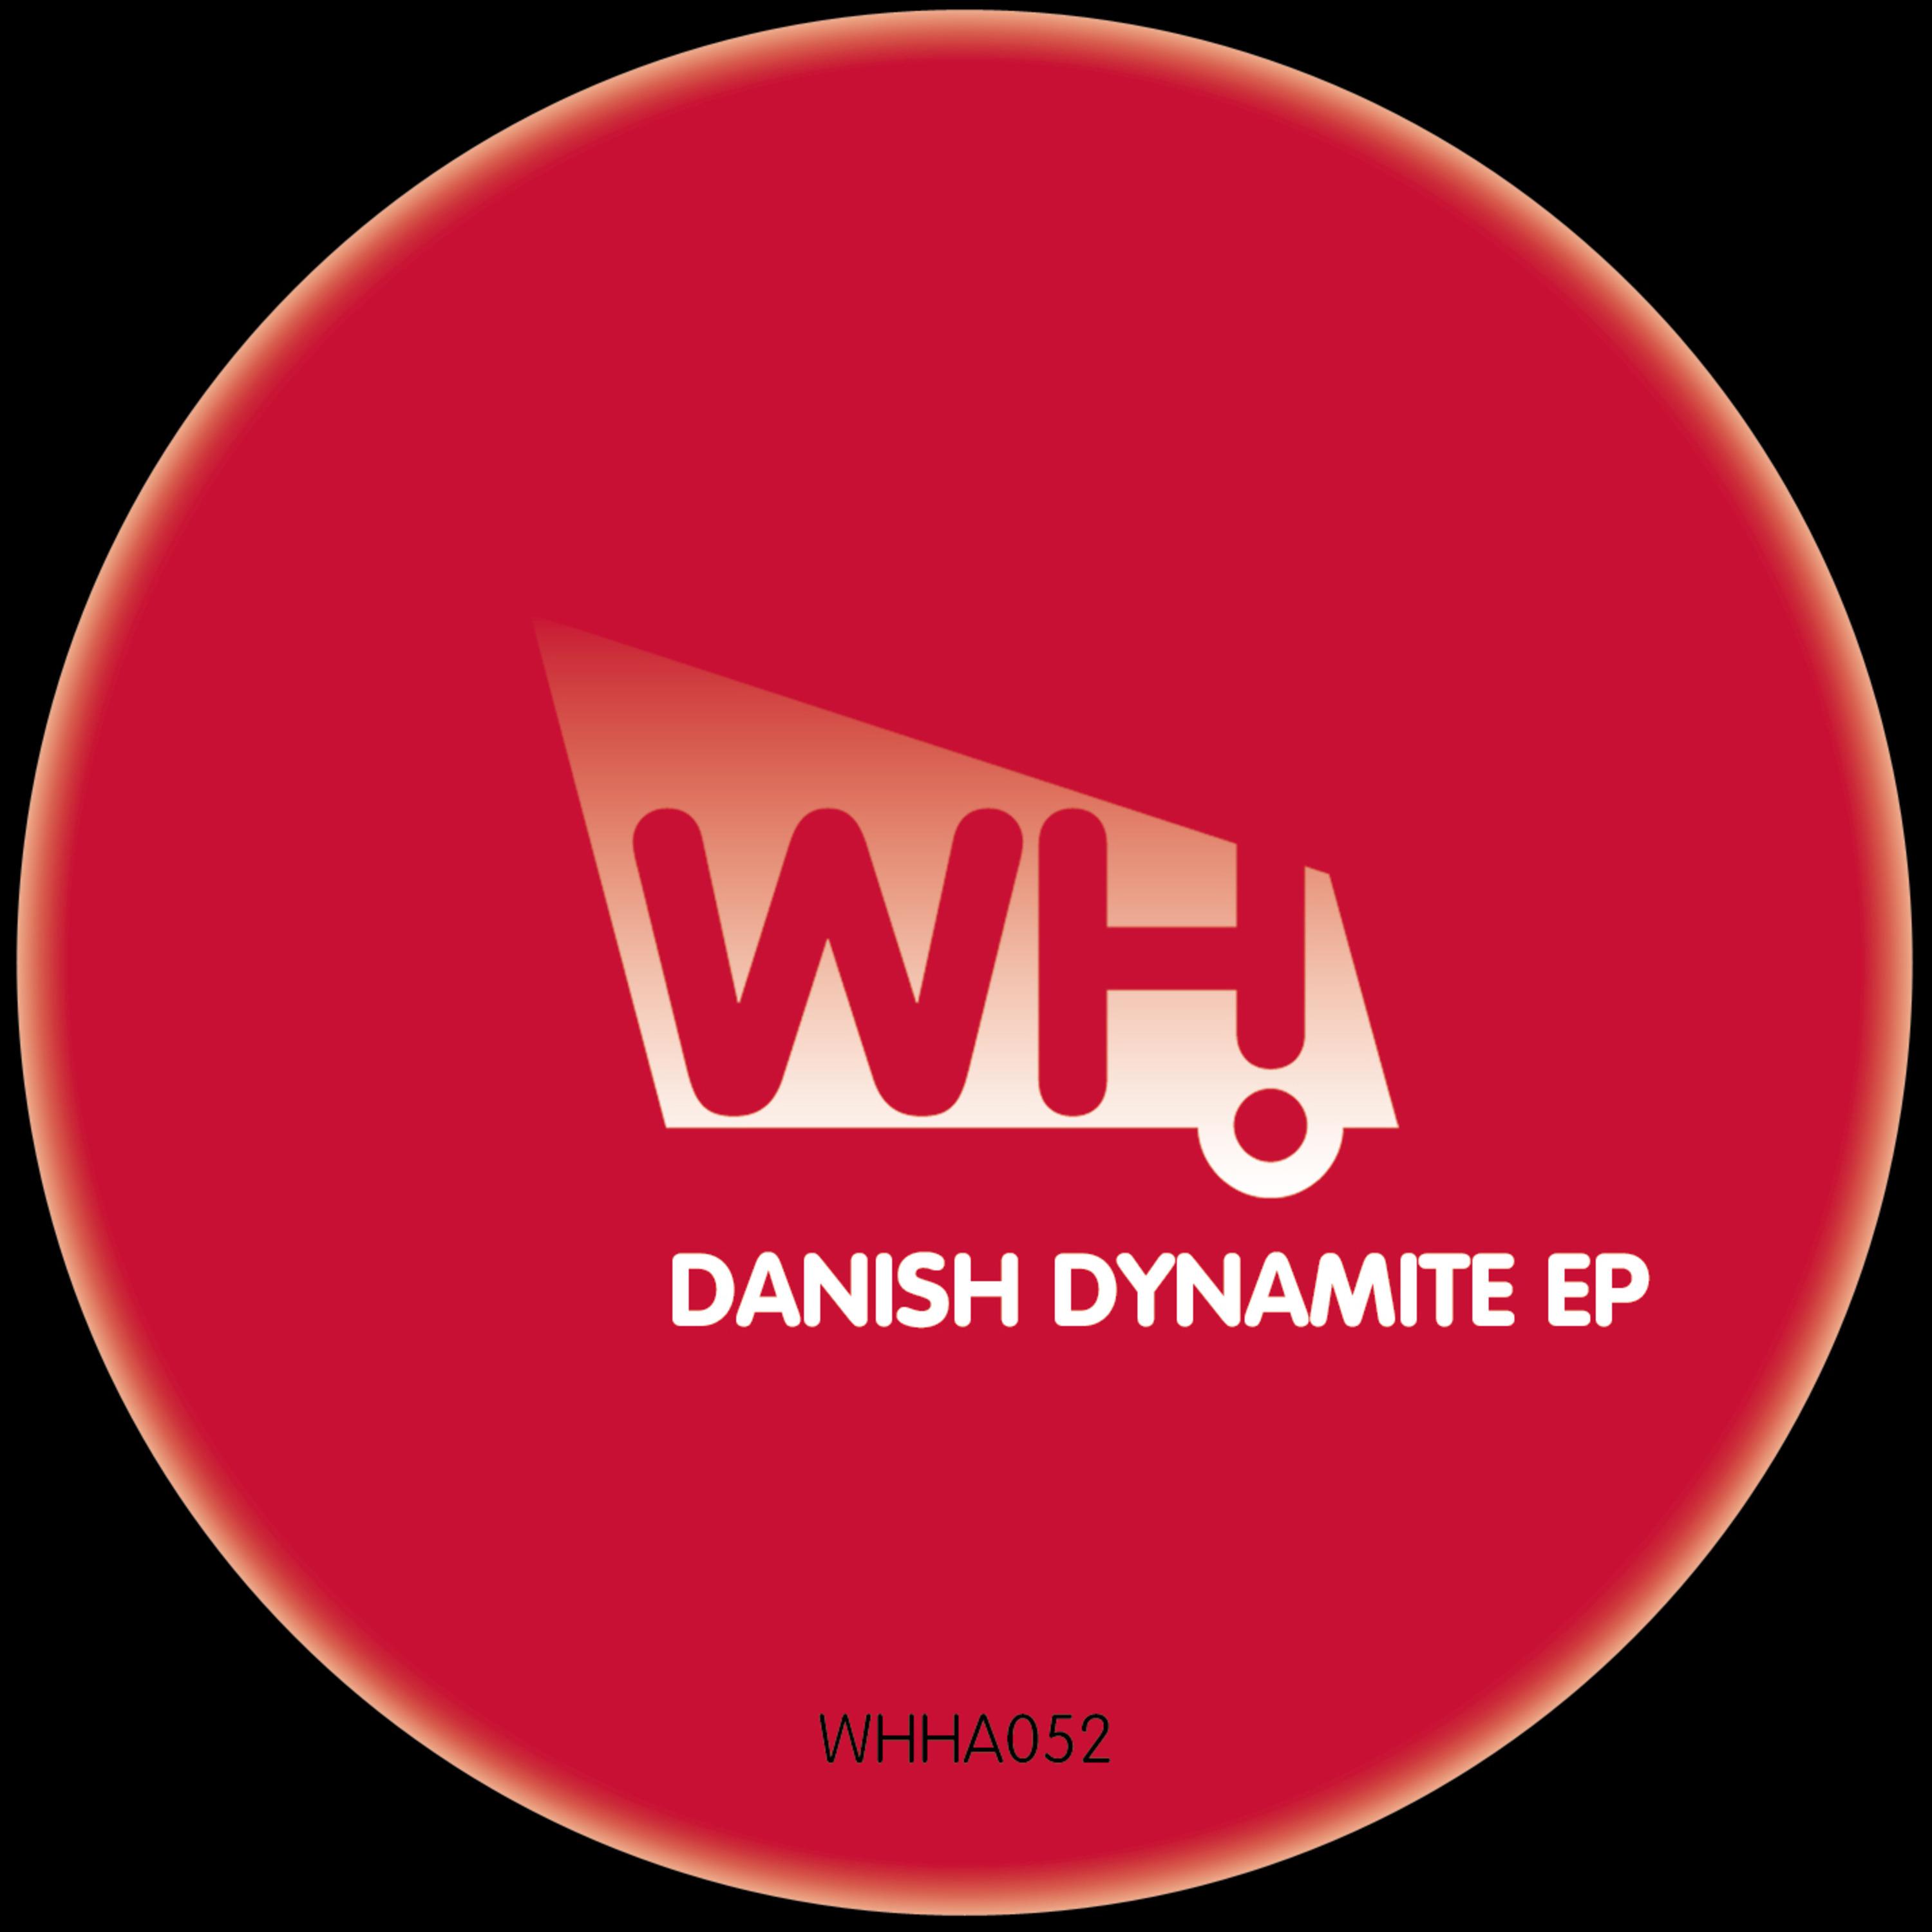 Danish Dynamite EP